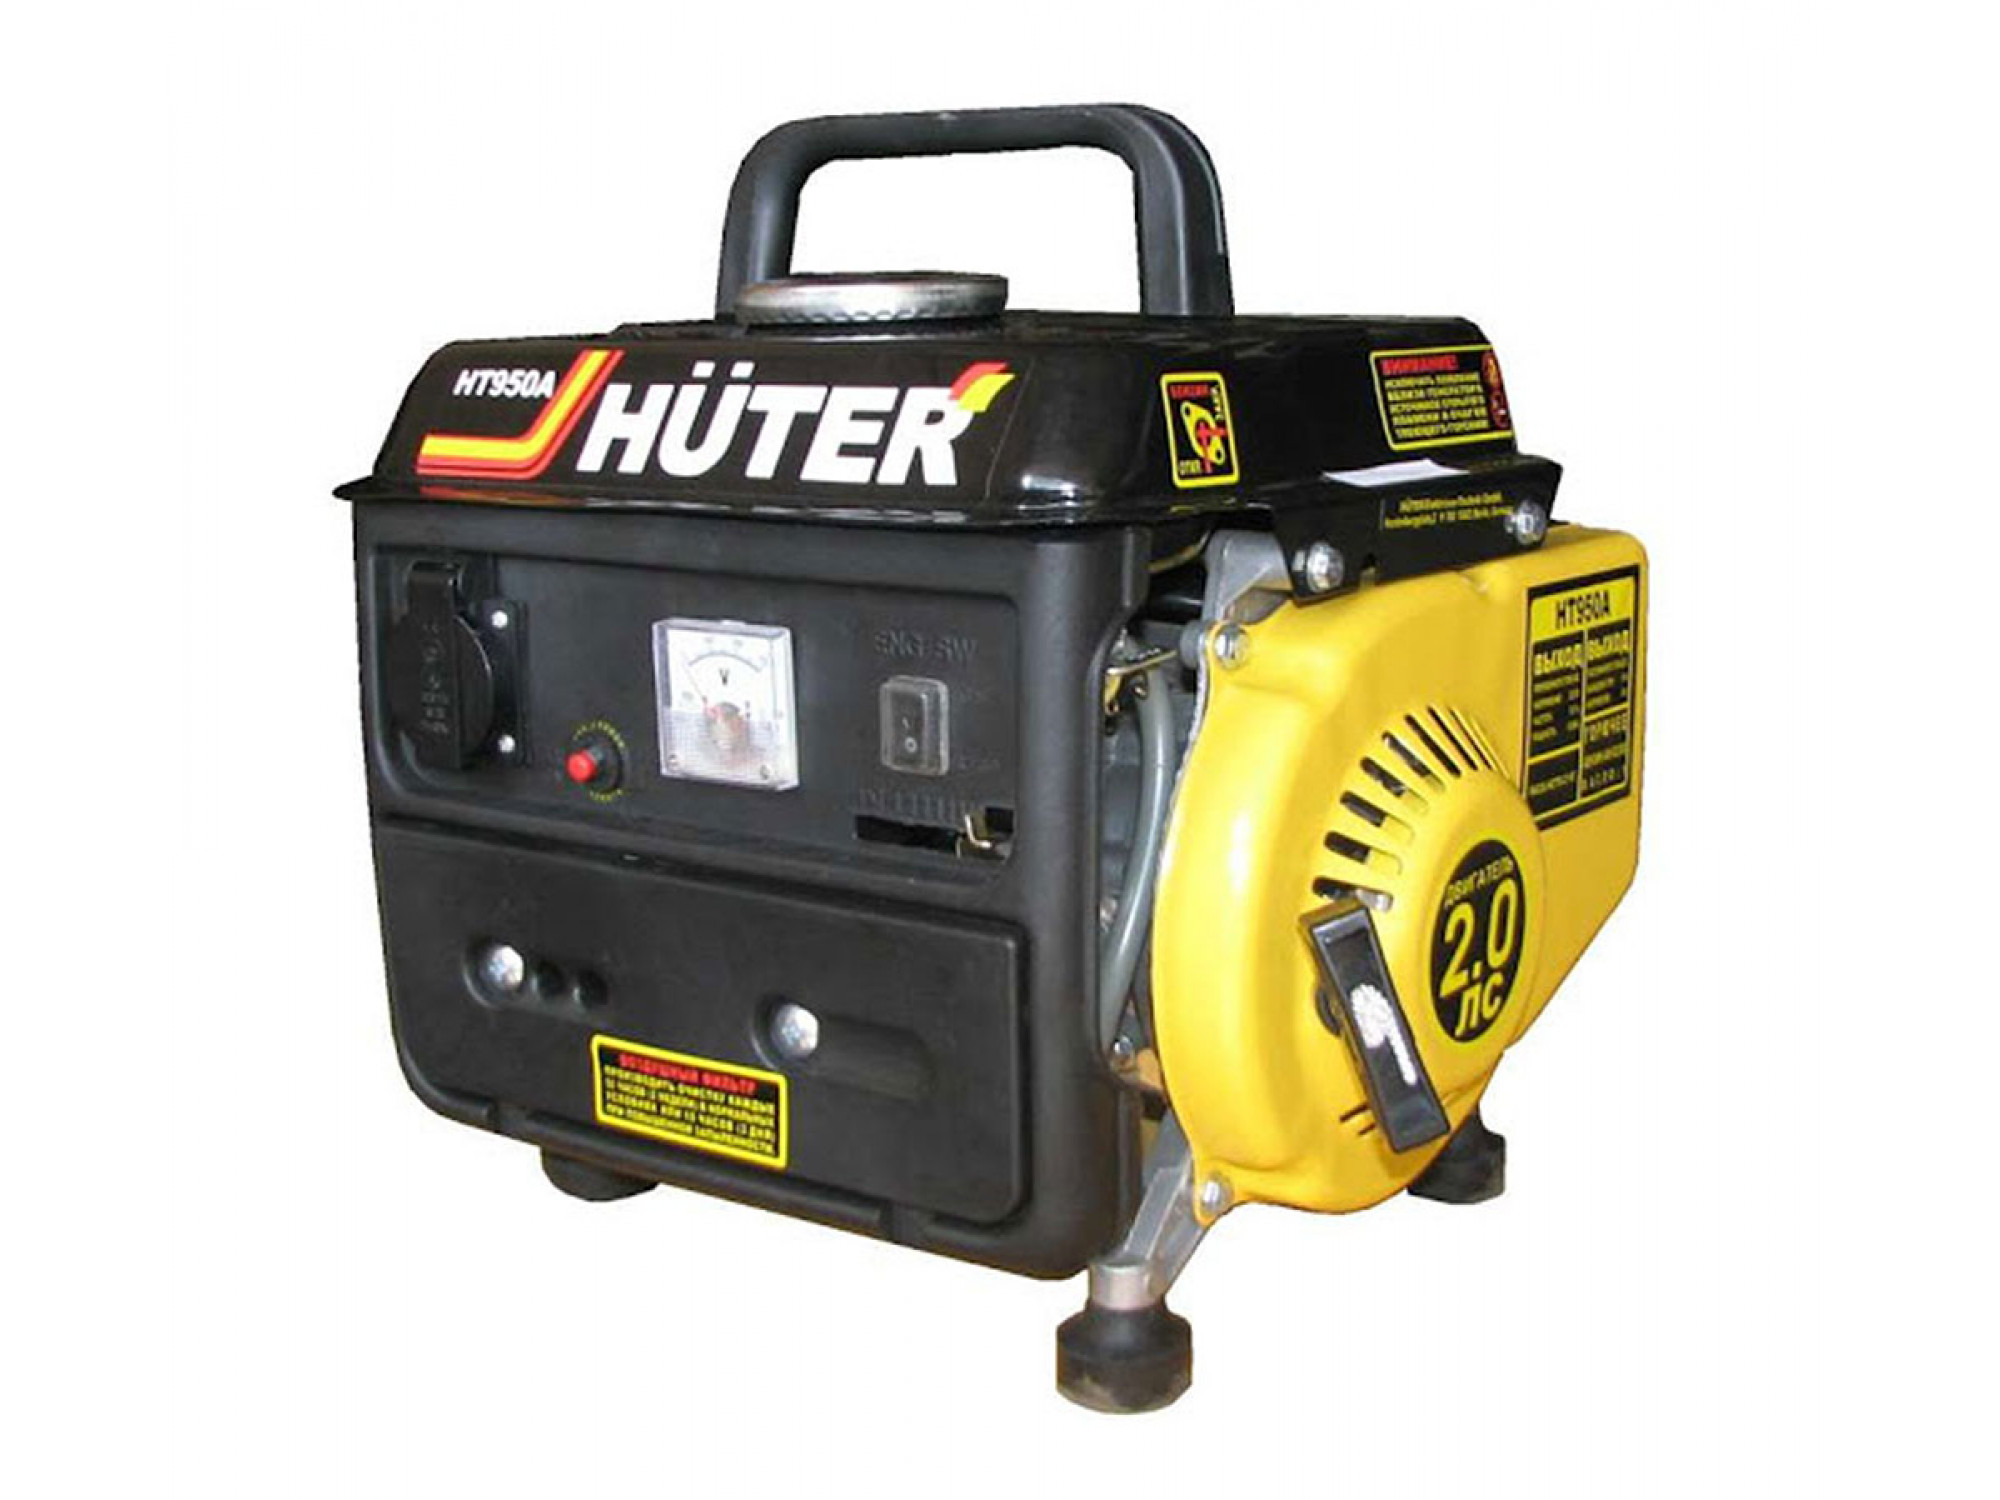 Купить генератор в уфе. Huter ht950a. Генератор Huter ht950a. Хантер Генератор бензиновый ht950a. Генератор бензиновый Хутер 950.